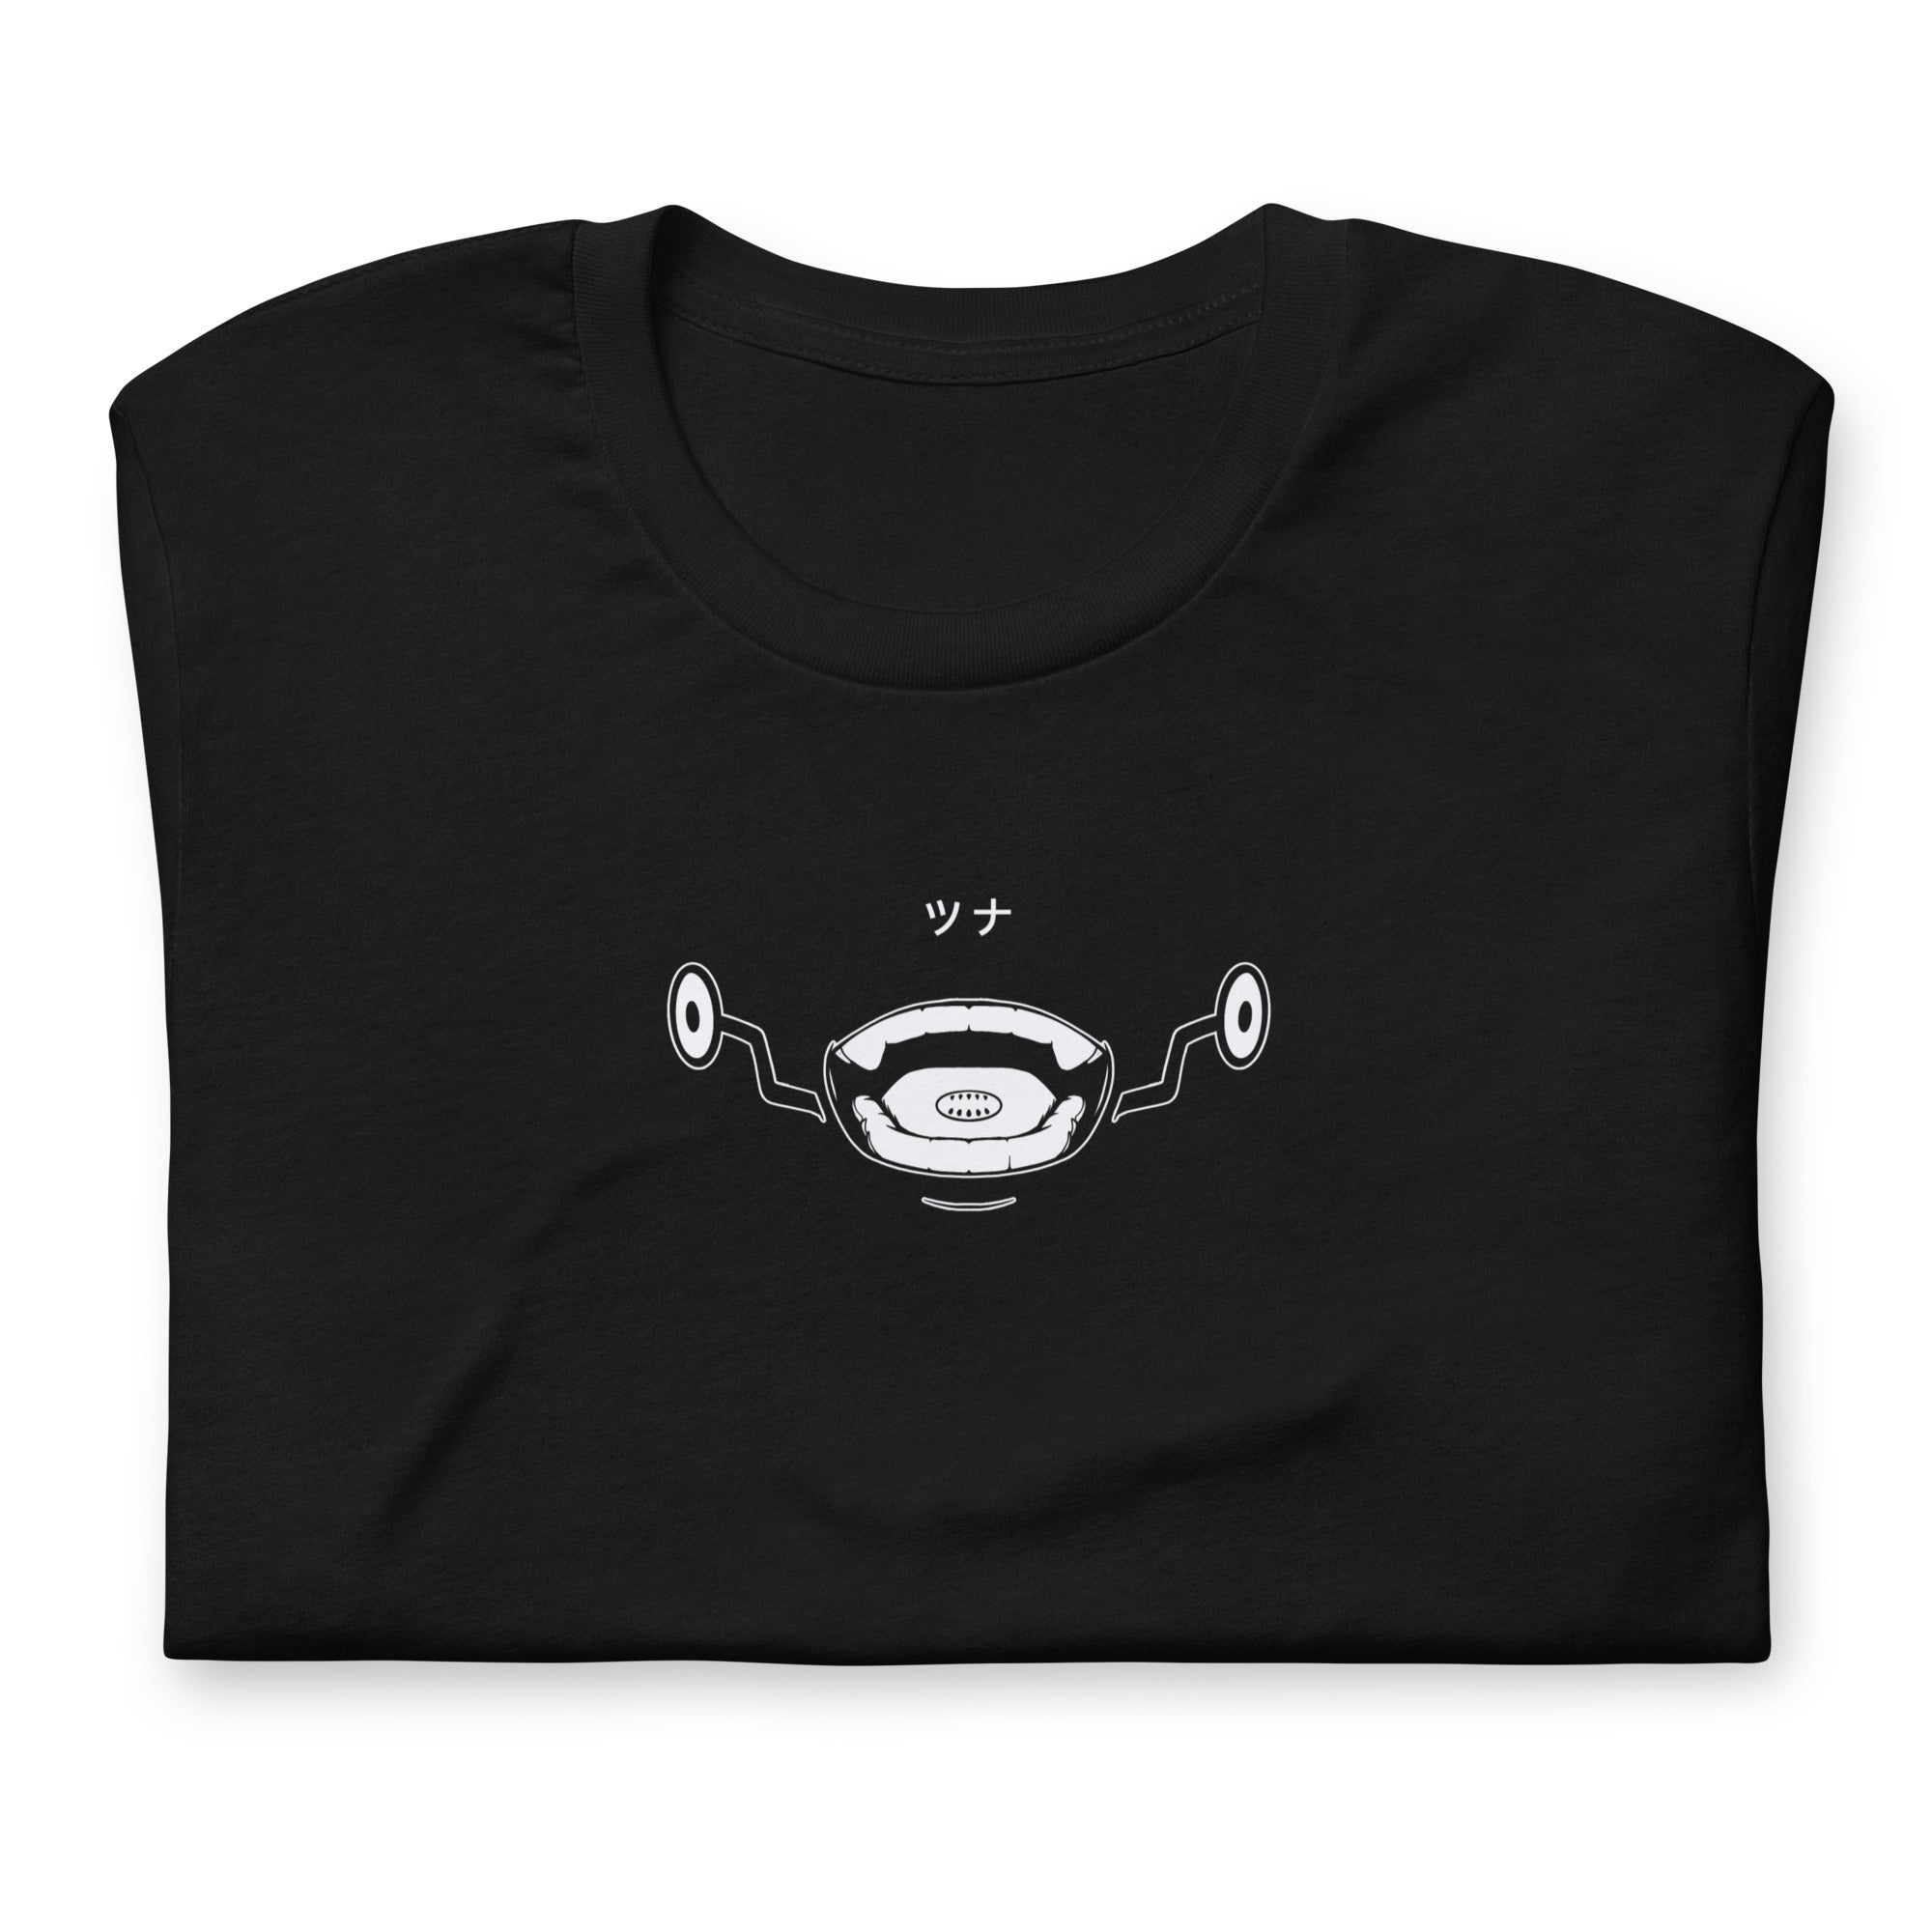 Toge (Tuna) - T-Shirt